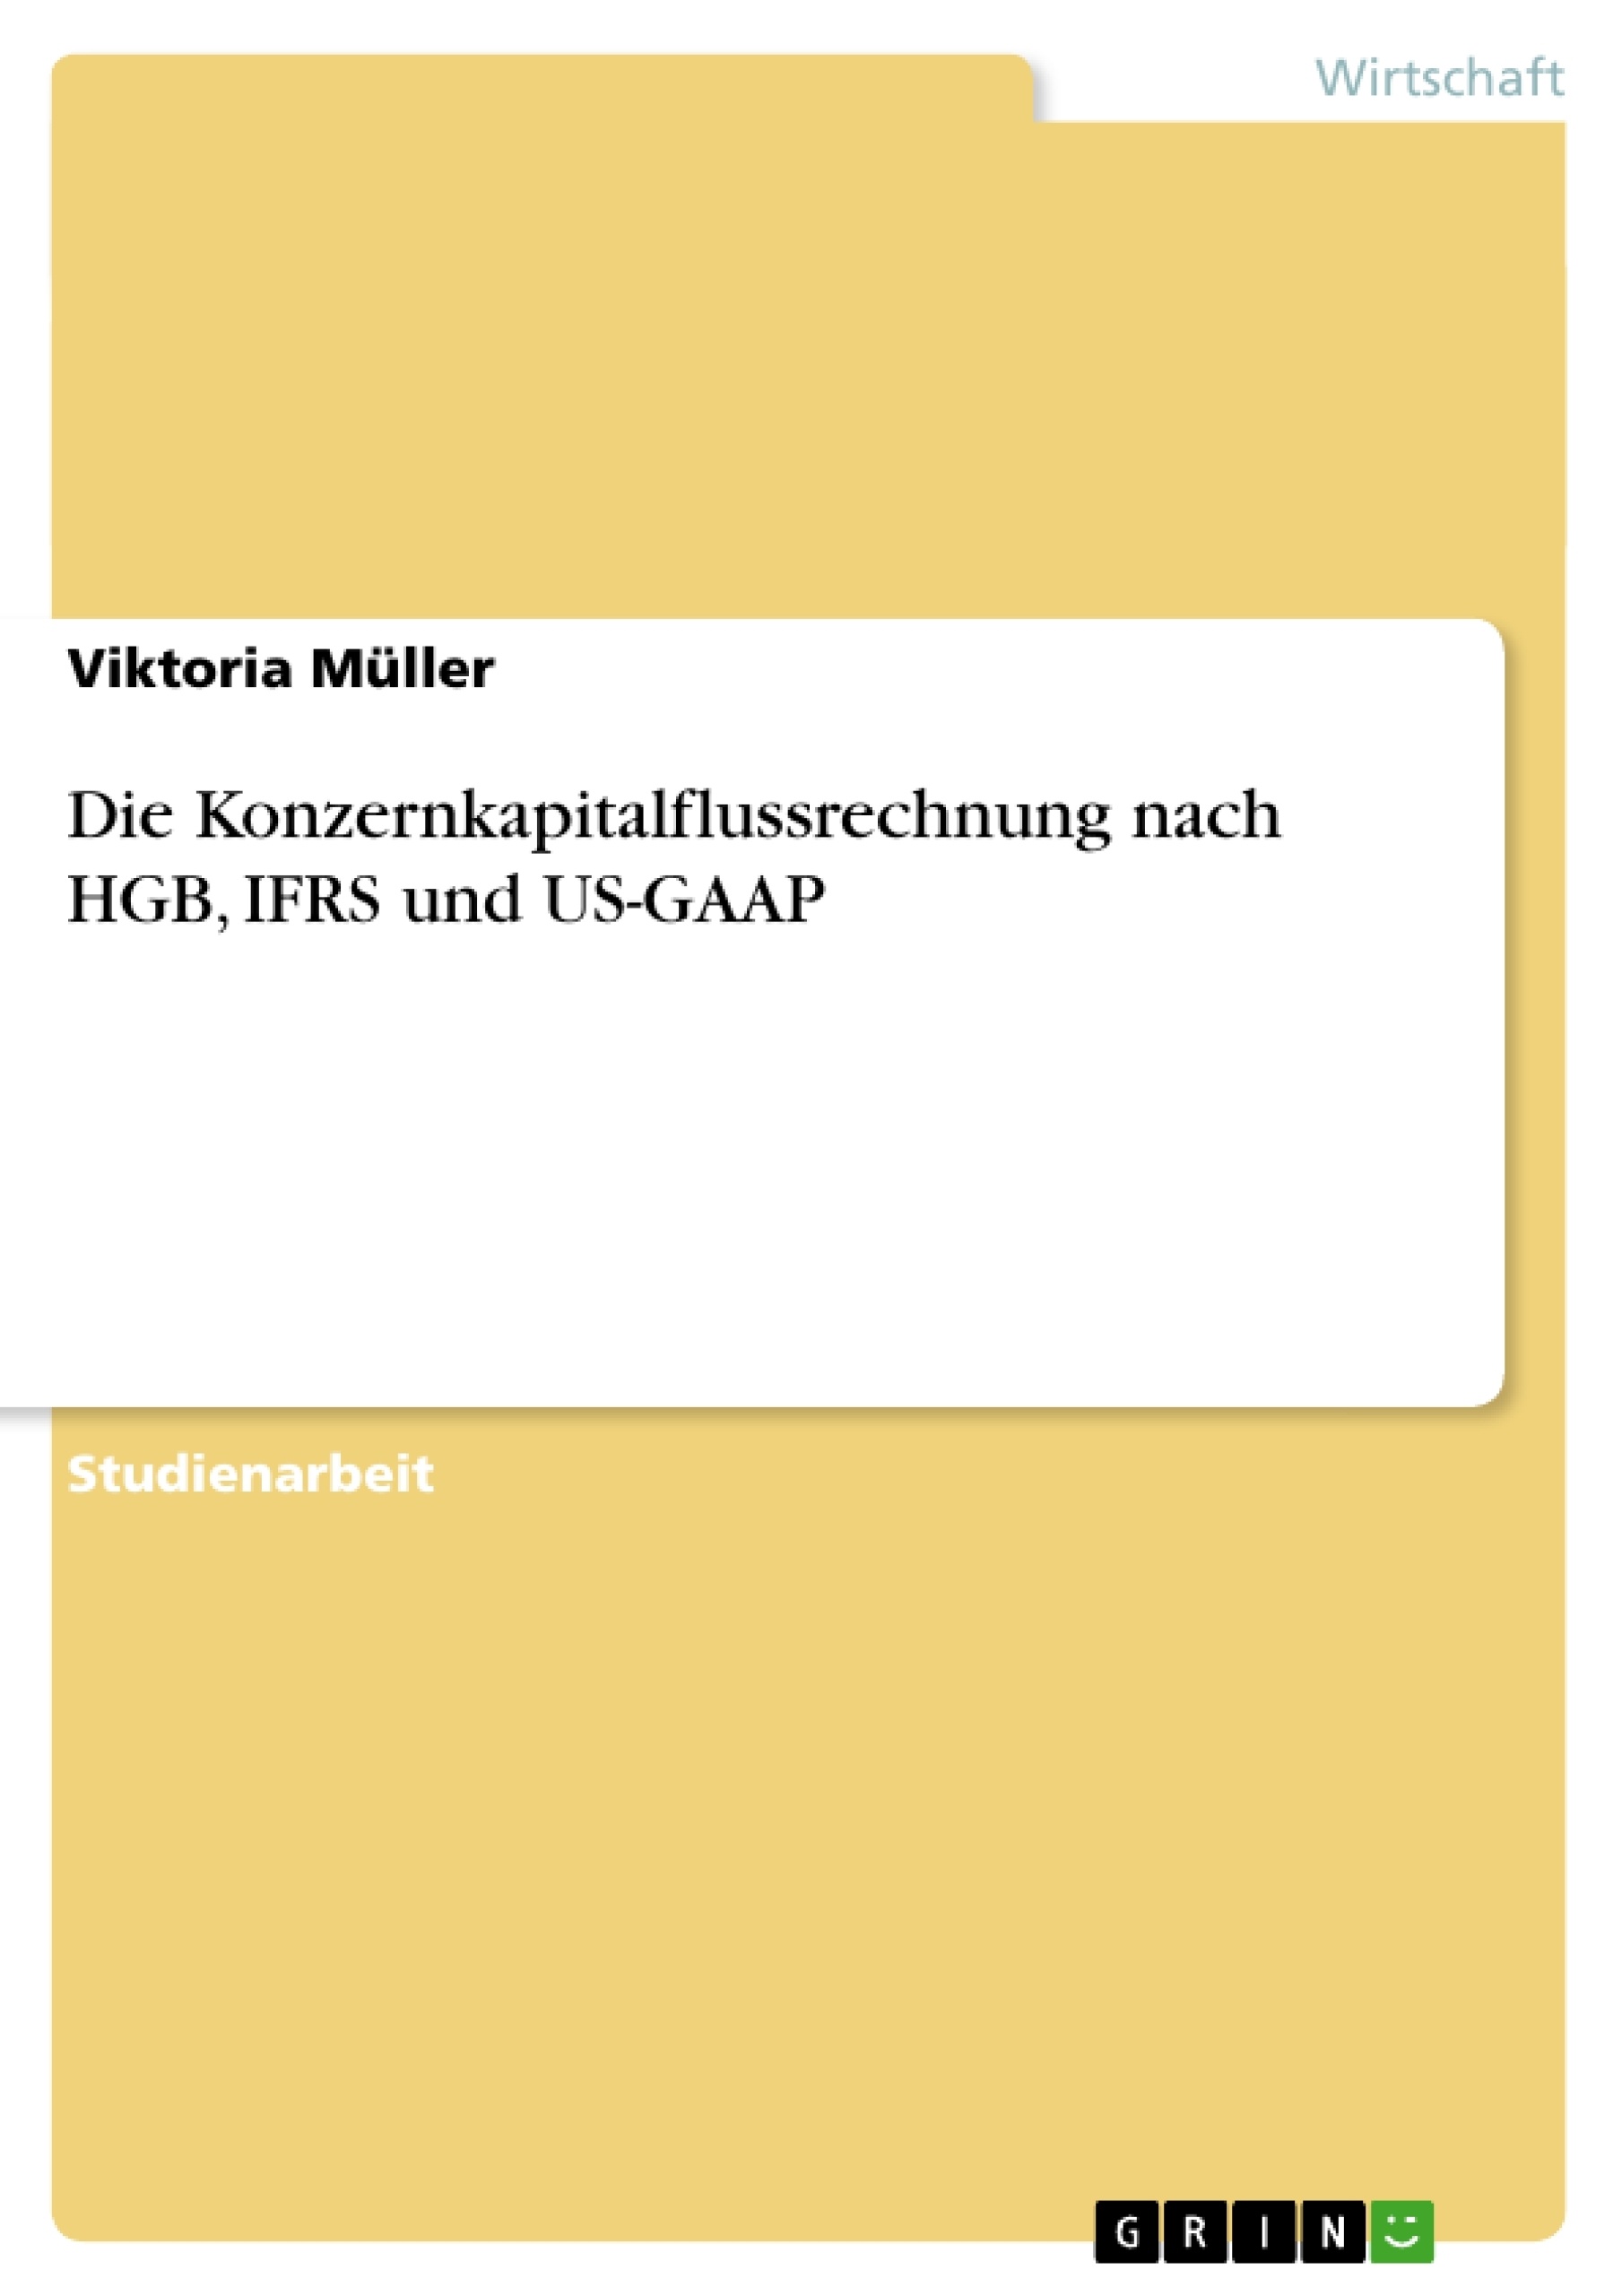 Title: Die Konzernkapitalflussrechnung nach HGB, IFRS und US-GAAP